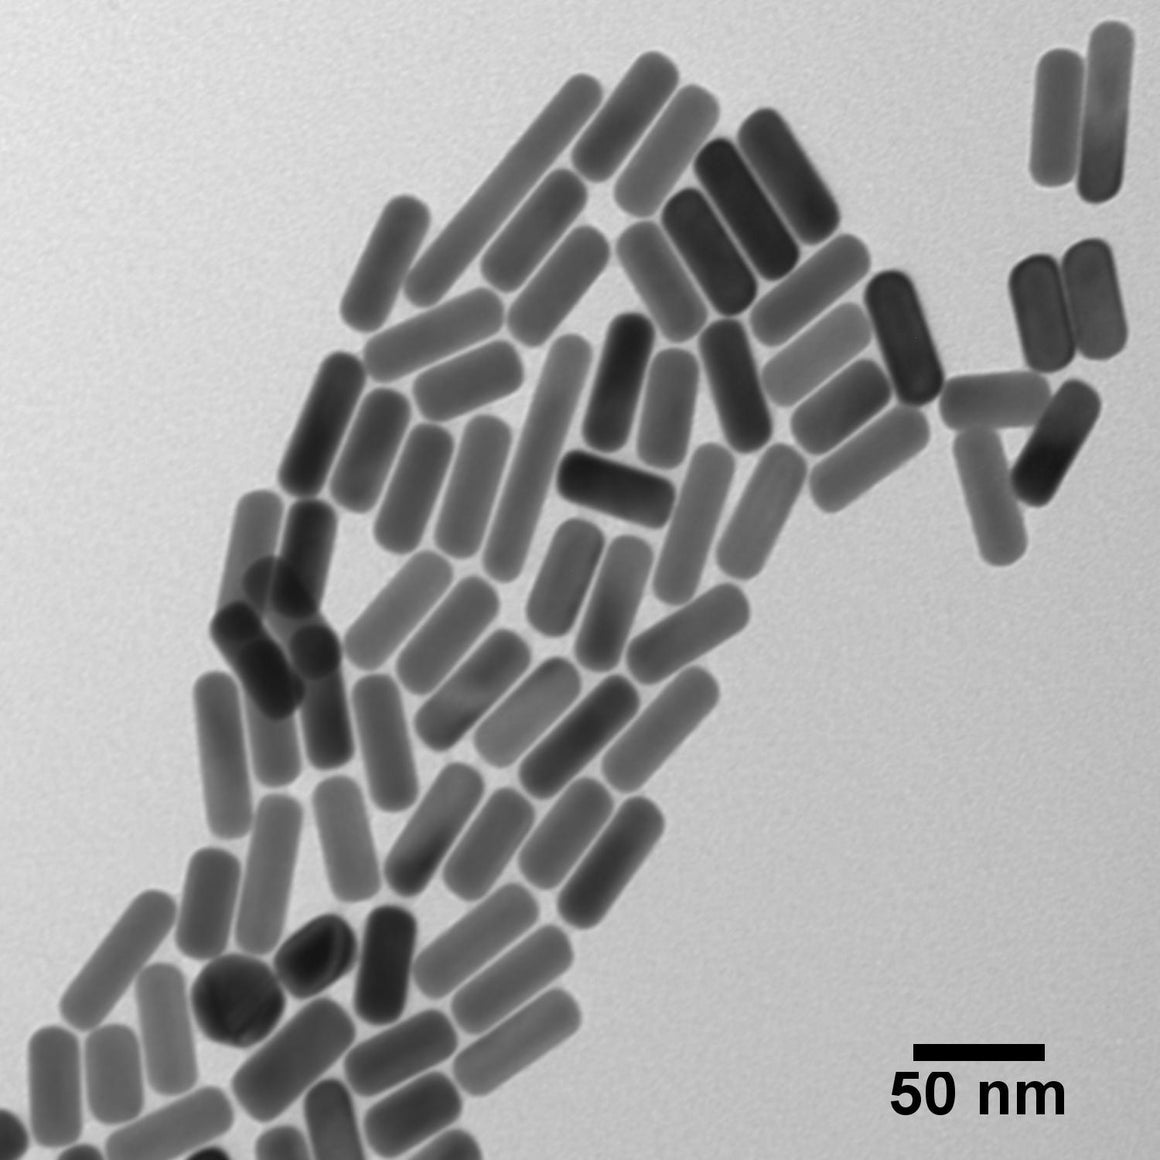 NanoXact Gold Nanorods – PEG